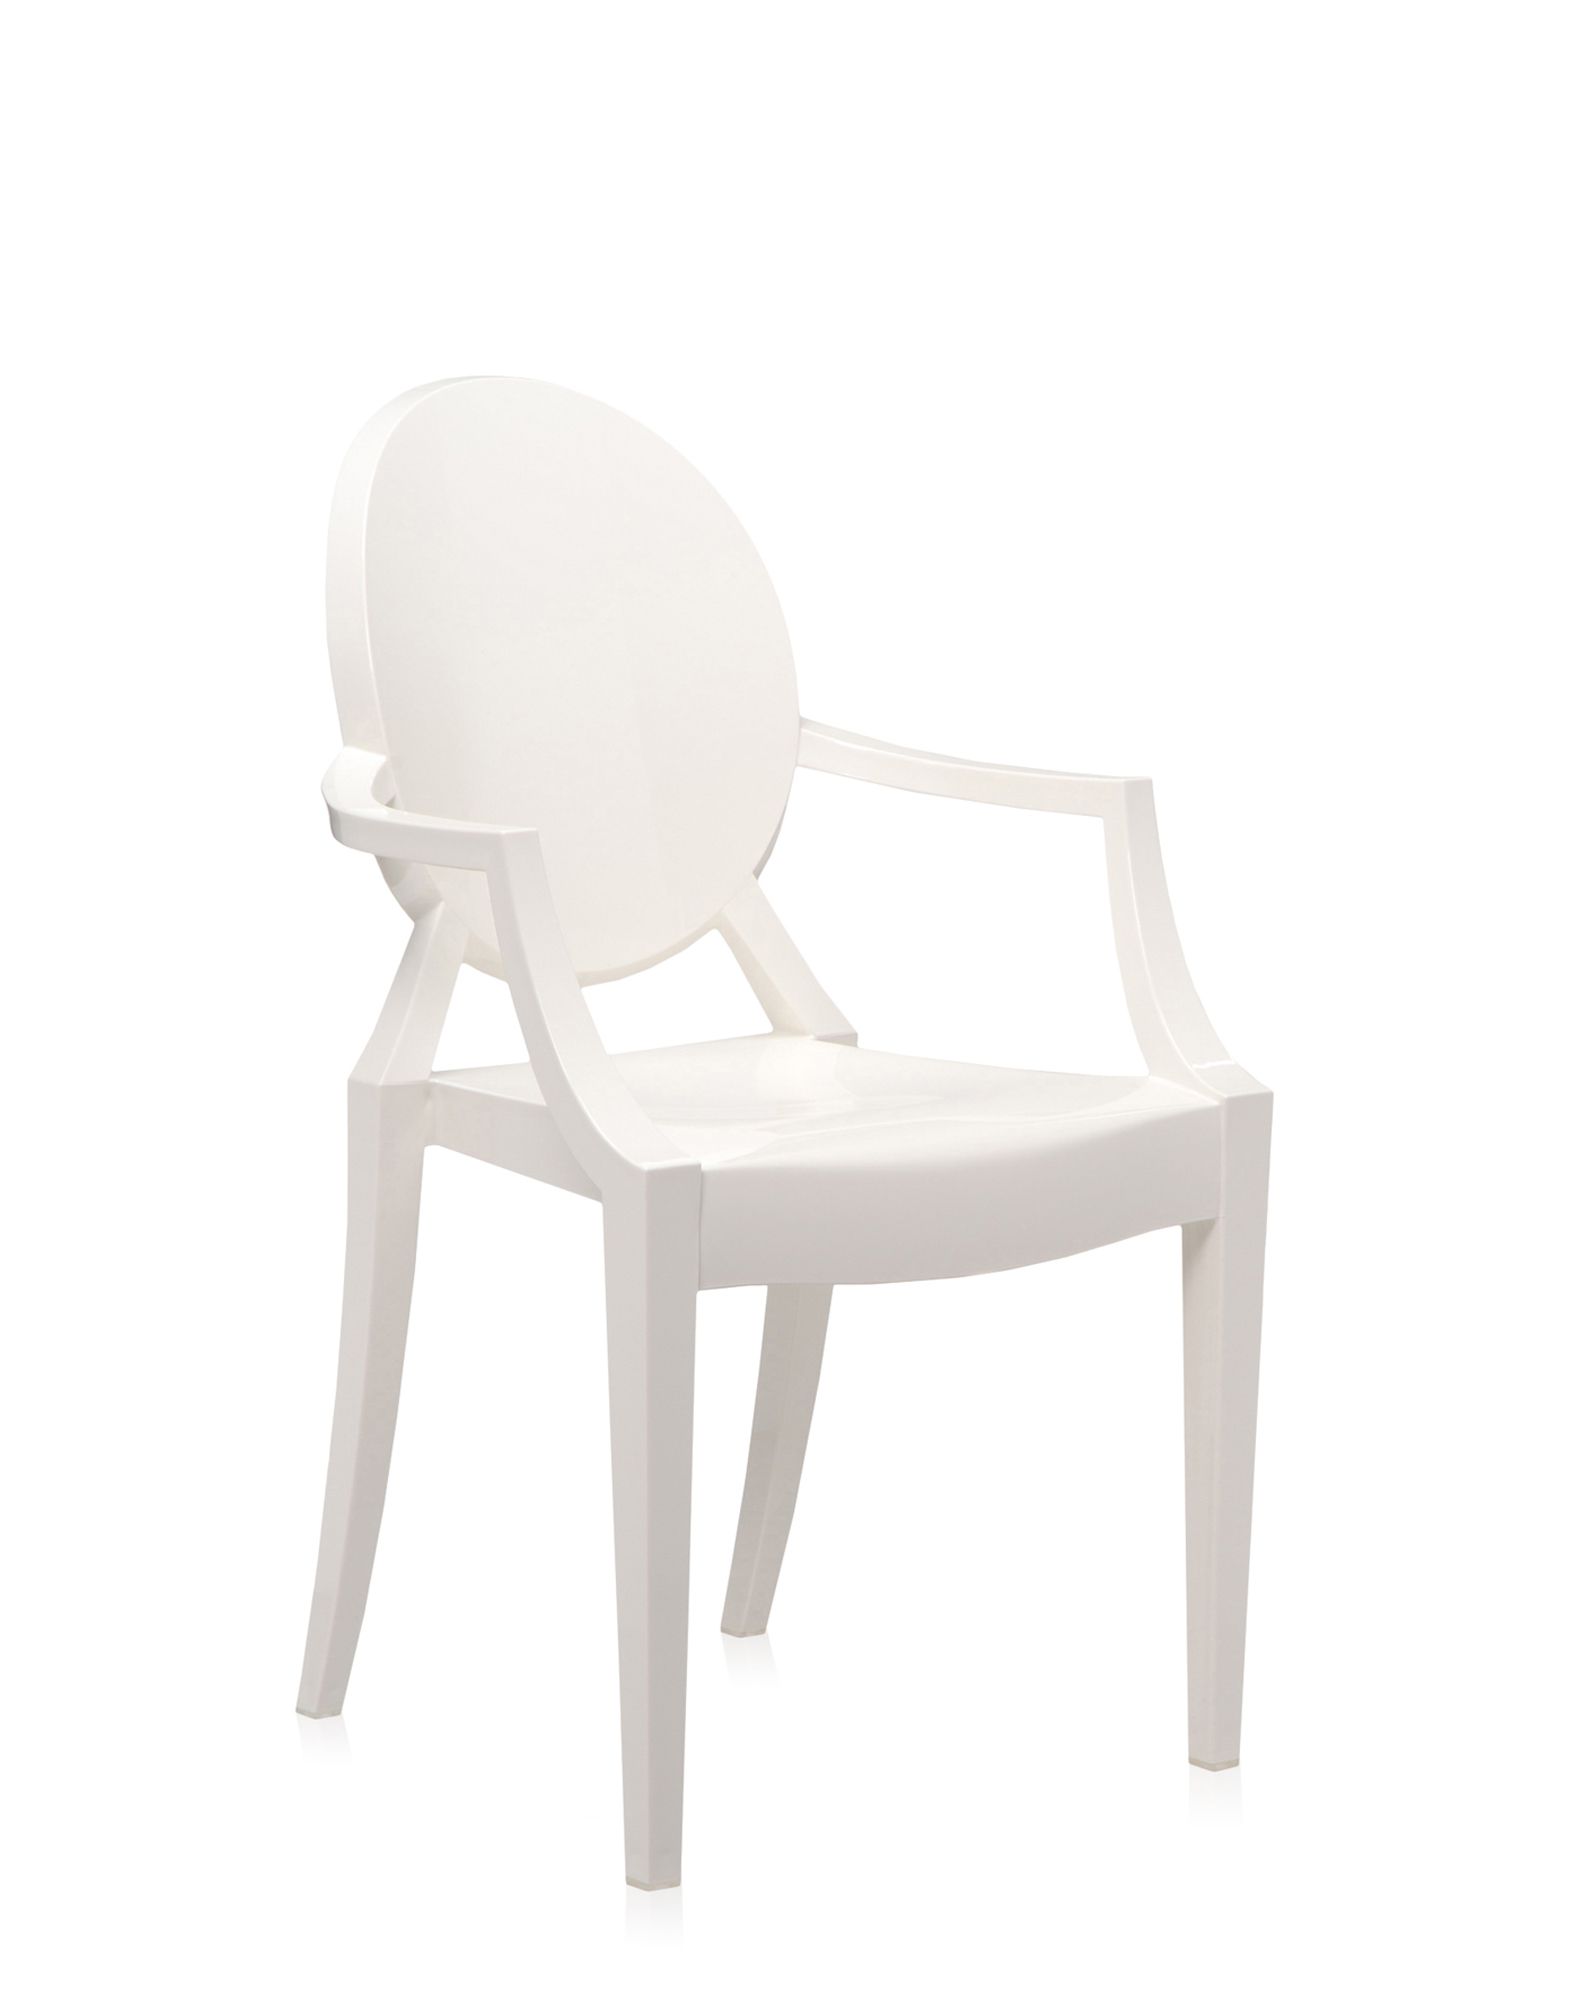 Kartell Louis Ghost sedia bianco coprente